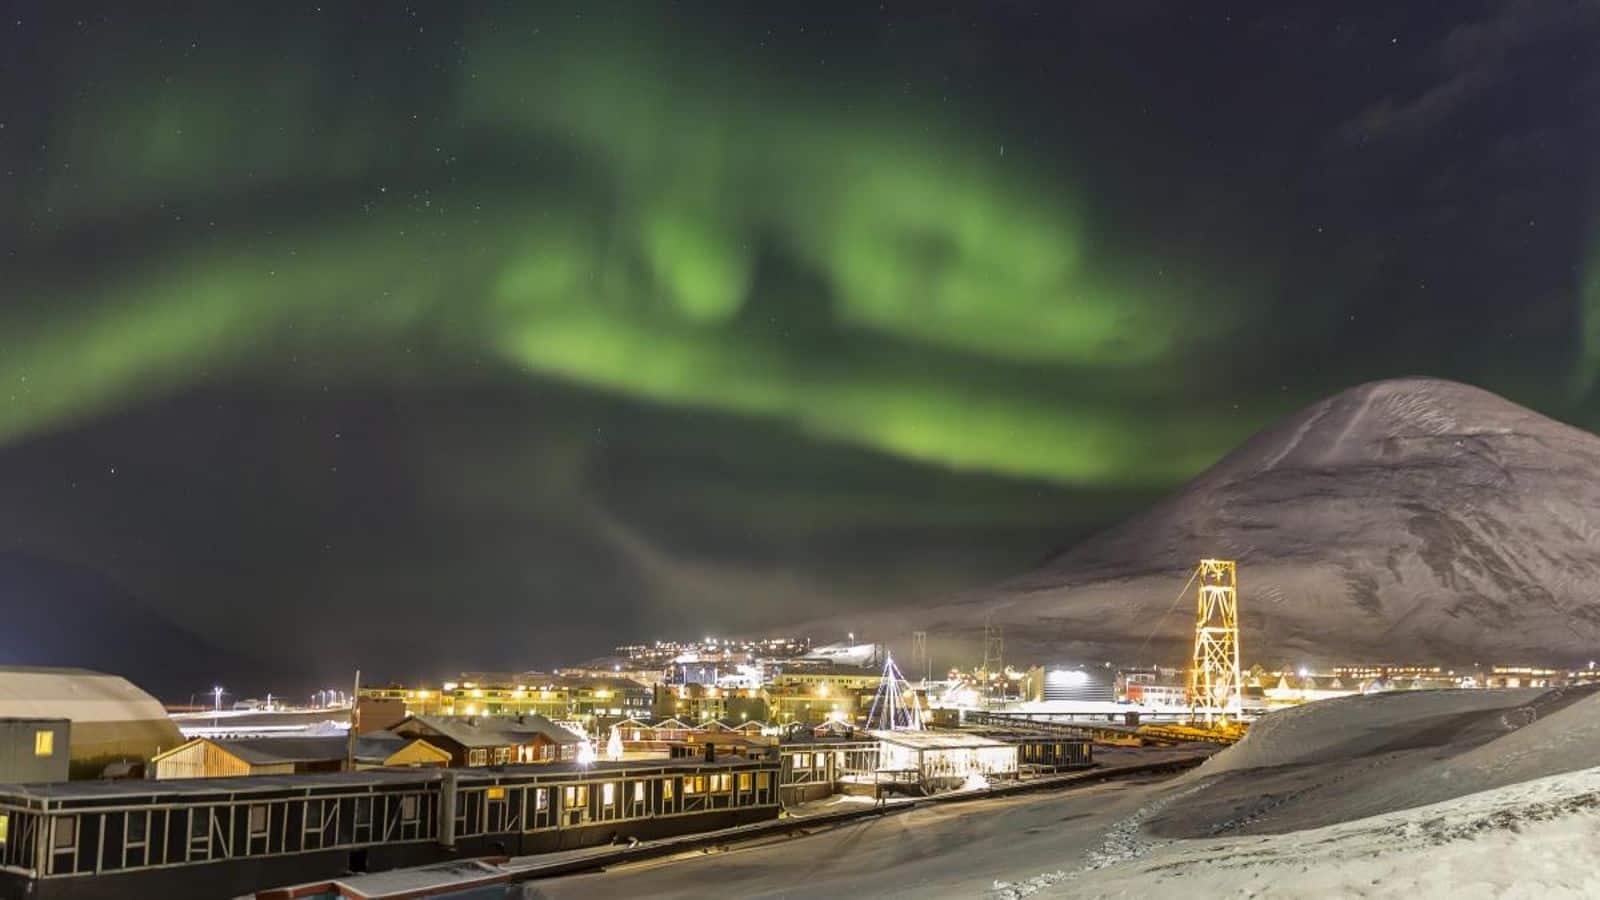 Witness the stunning polar night phenomenon in Svalbard, Norway